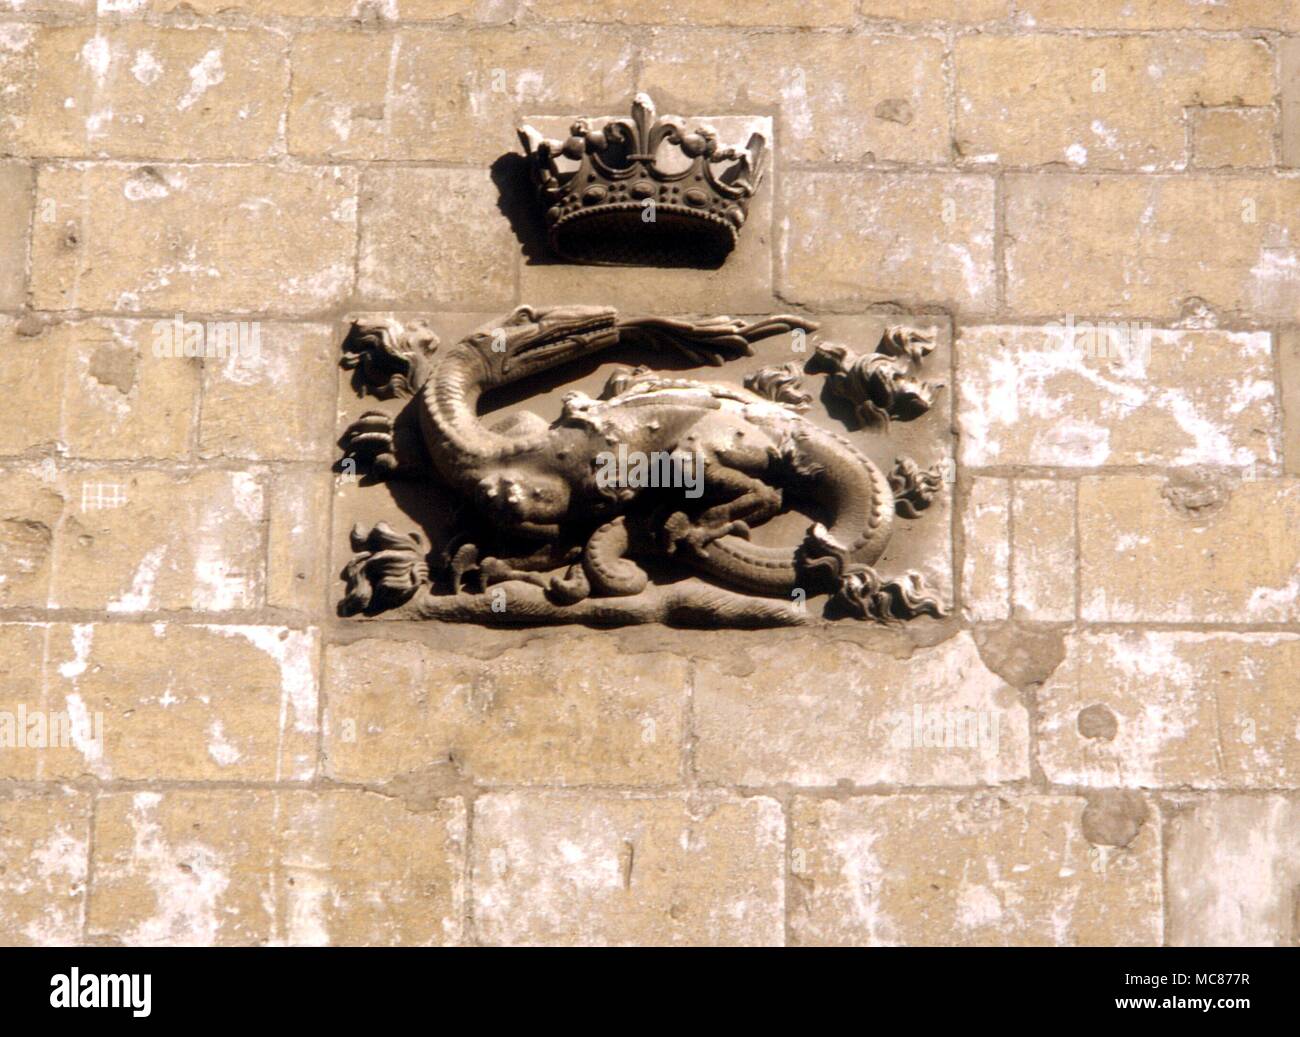 Salamander sur les murs de l'escalier orné du château de Blois, symbole du roi François I De France Banque D'Images